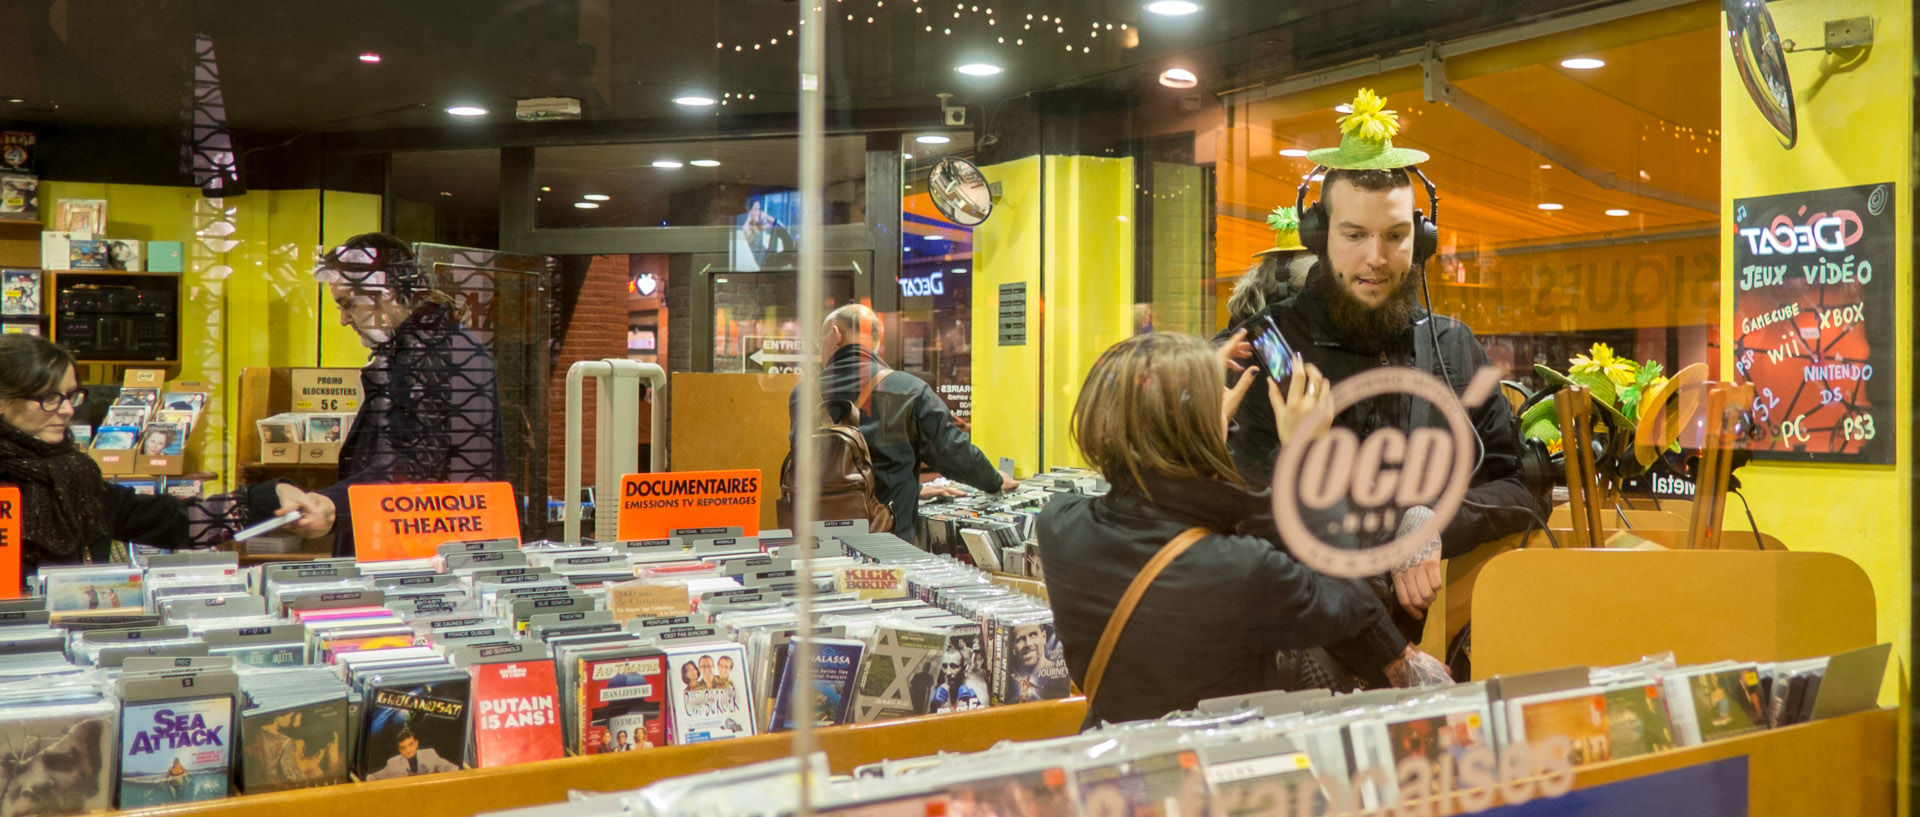 Jeune homme avec un casque audio dans un magasin de DVD et CD, rue de Tanneurs, à Lille.